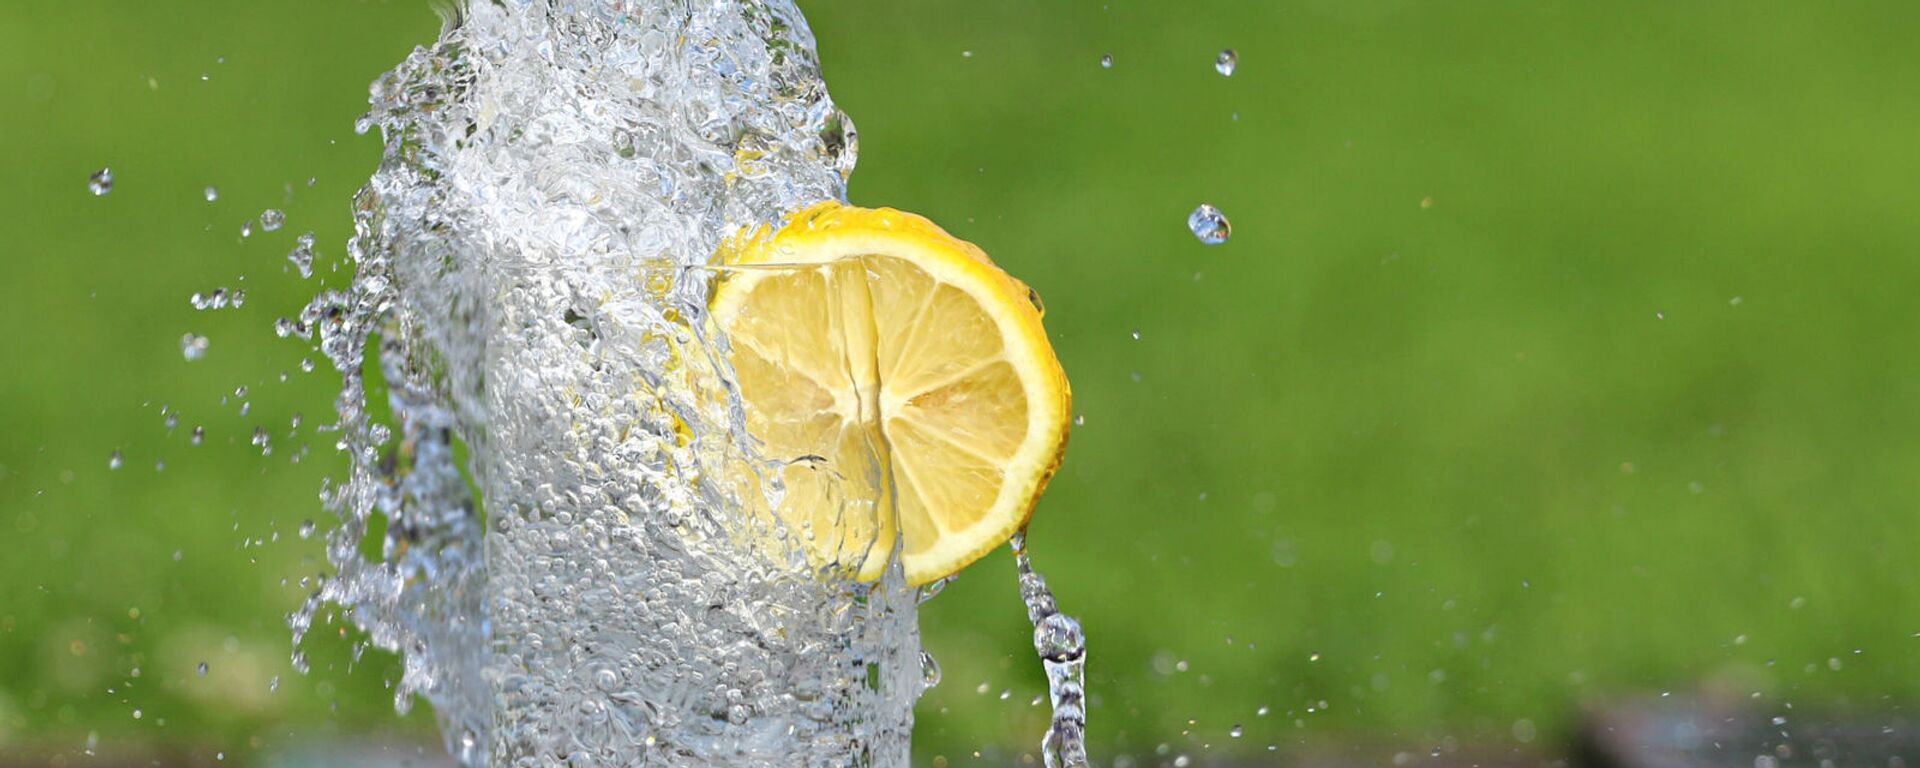 Холодная вода в бокале с долькой лимона - Sputnik Արմենիա, 1920, 16.04.2021